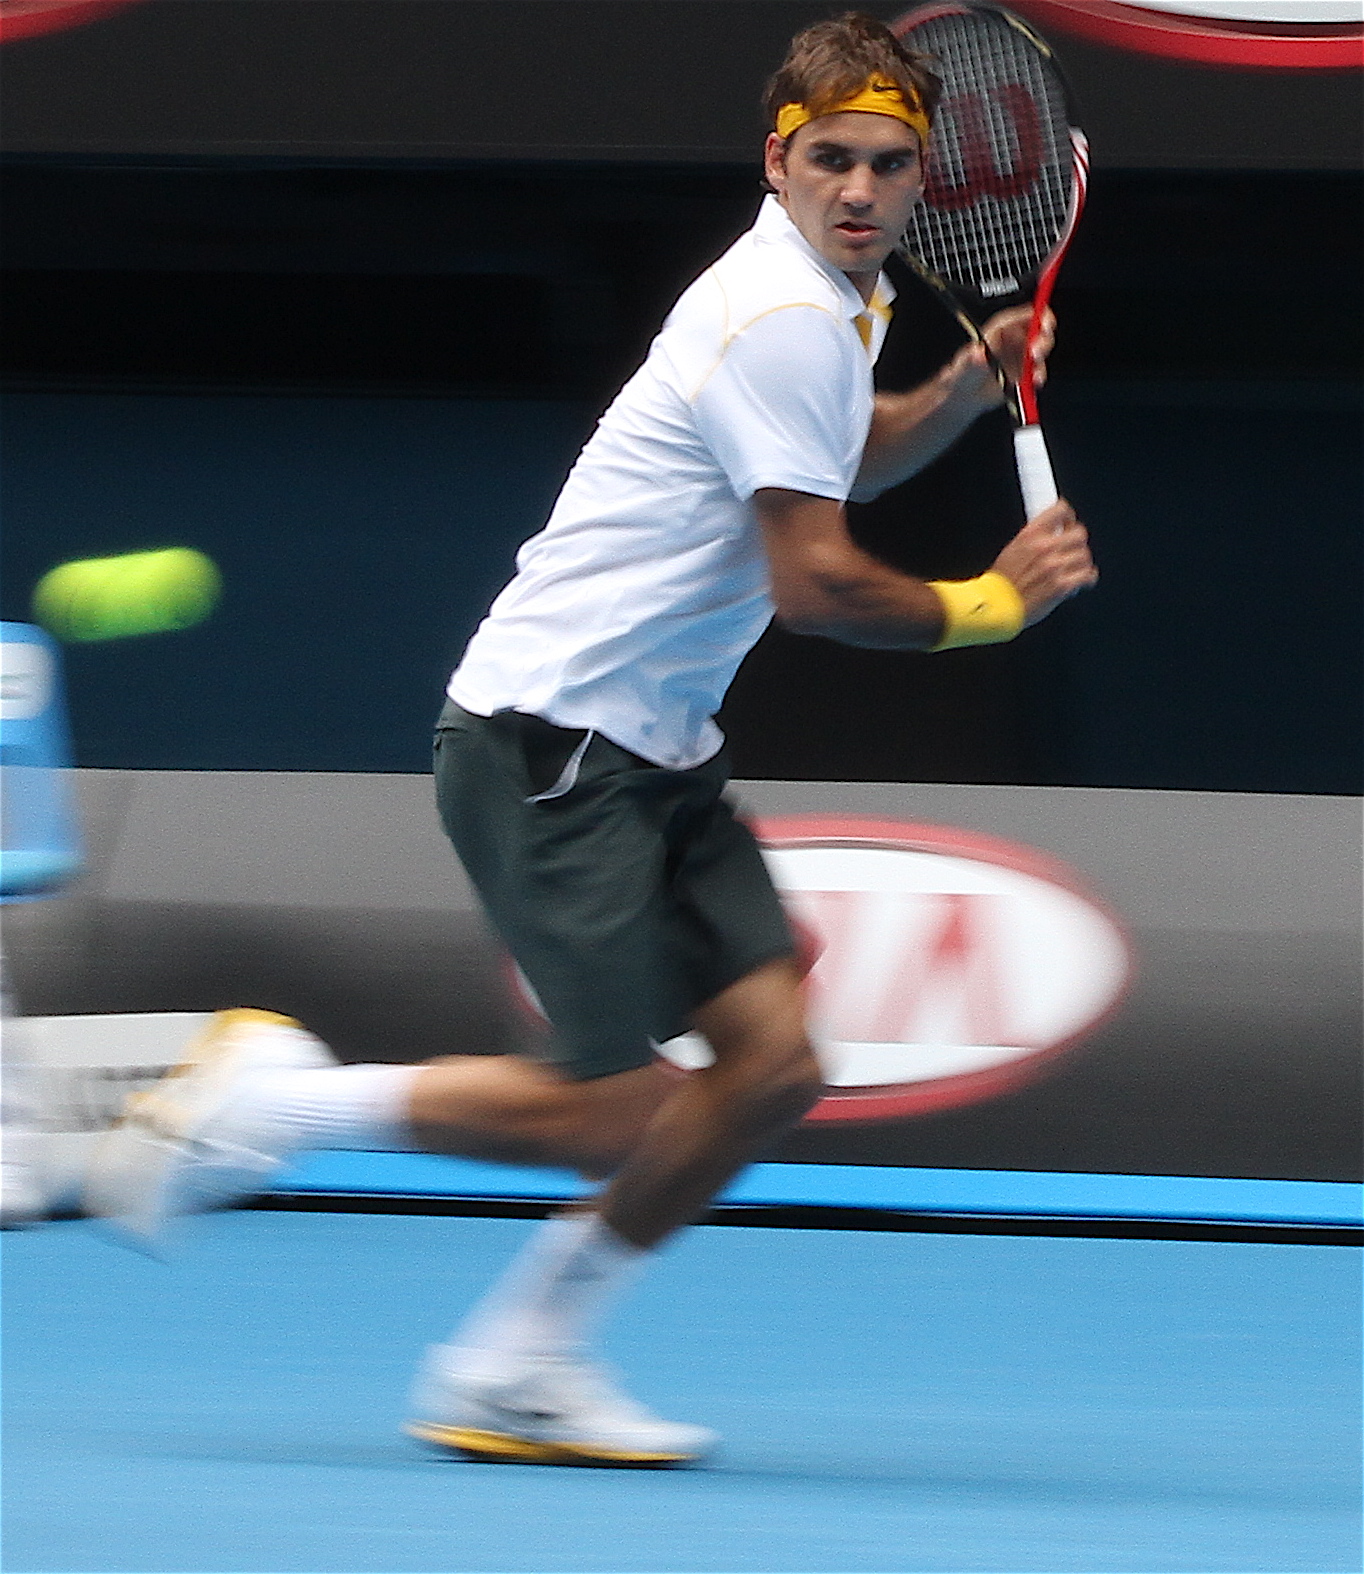 File:Roger Federer 2011.jpg - Wikimedia Commons